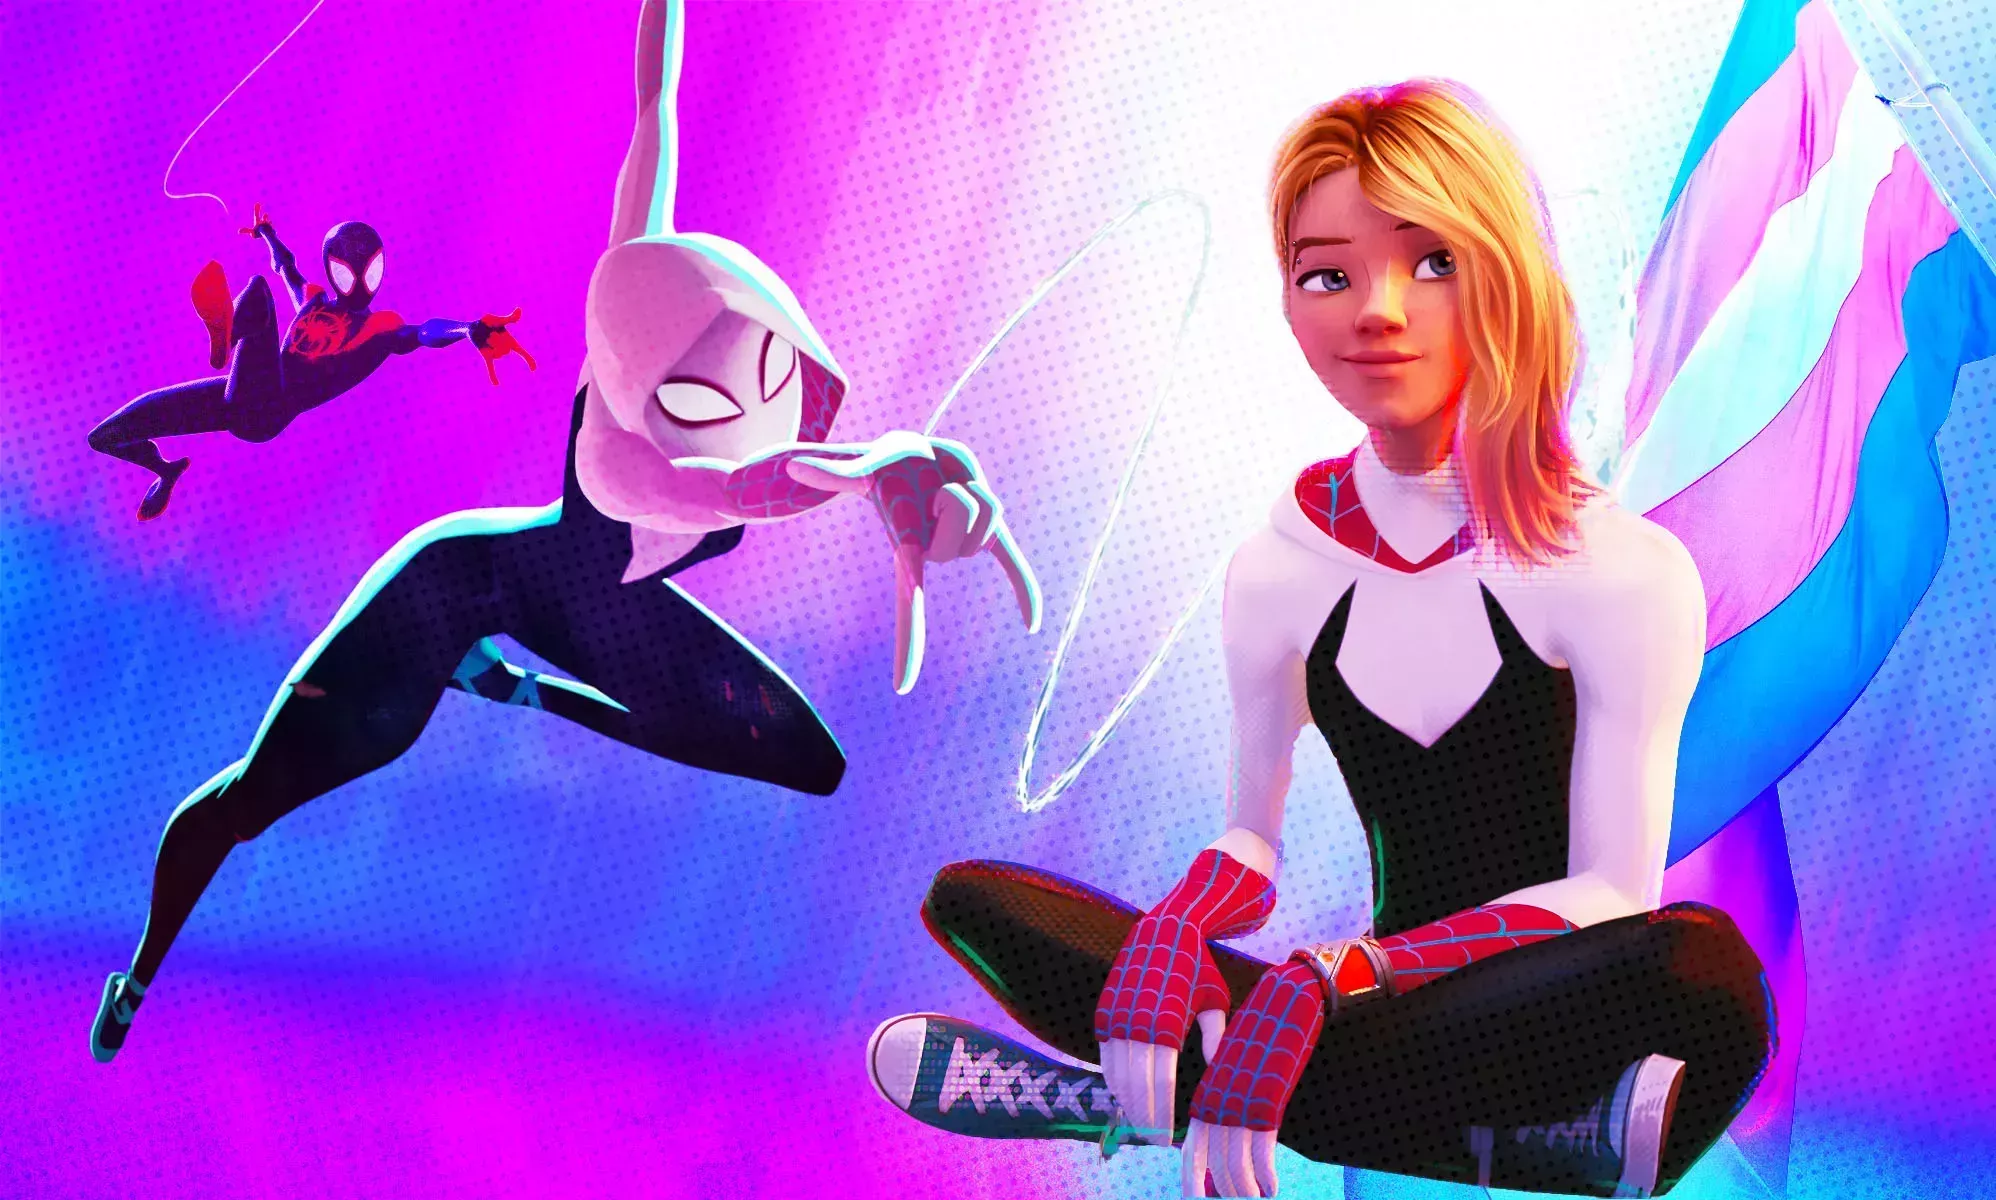 Los fans de Spider-Man están convencidos de que Gwen Stacy es trans en Across the Spider-Verse. Aquí están las pruebas